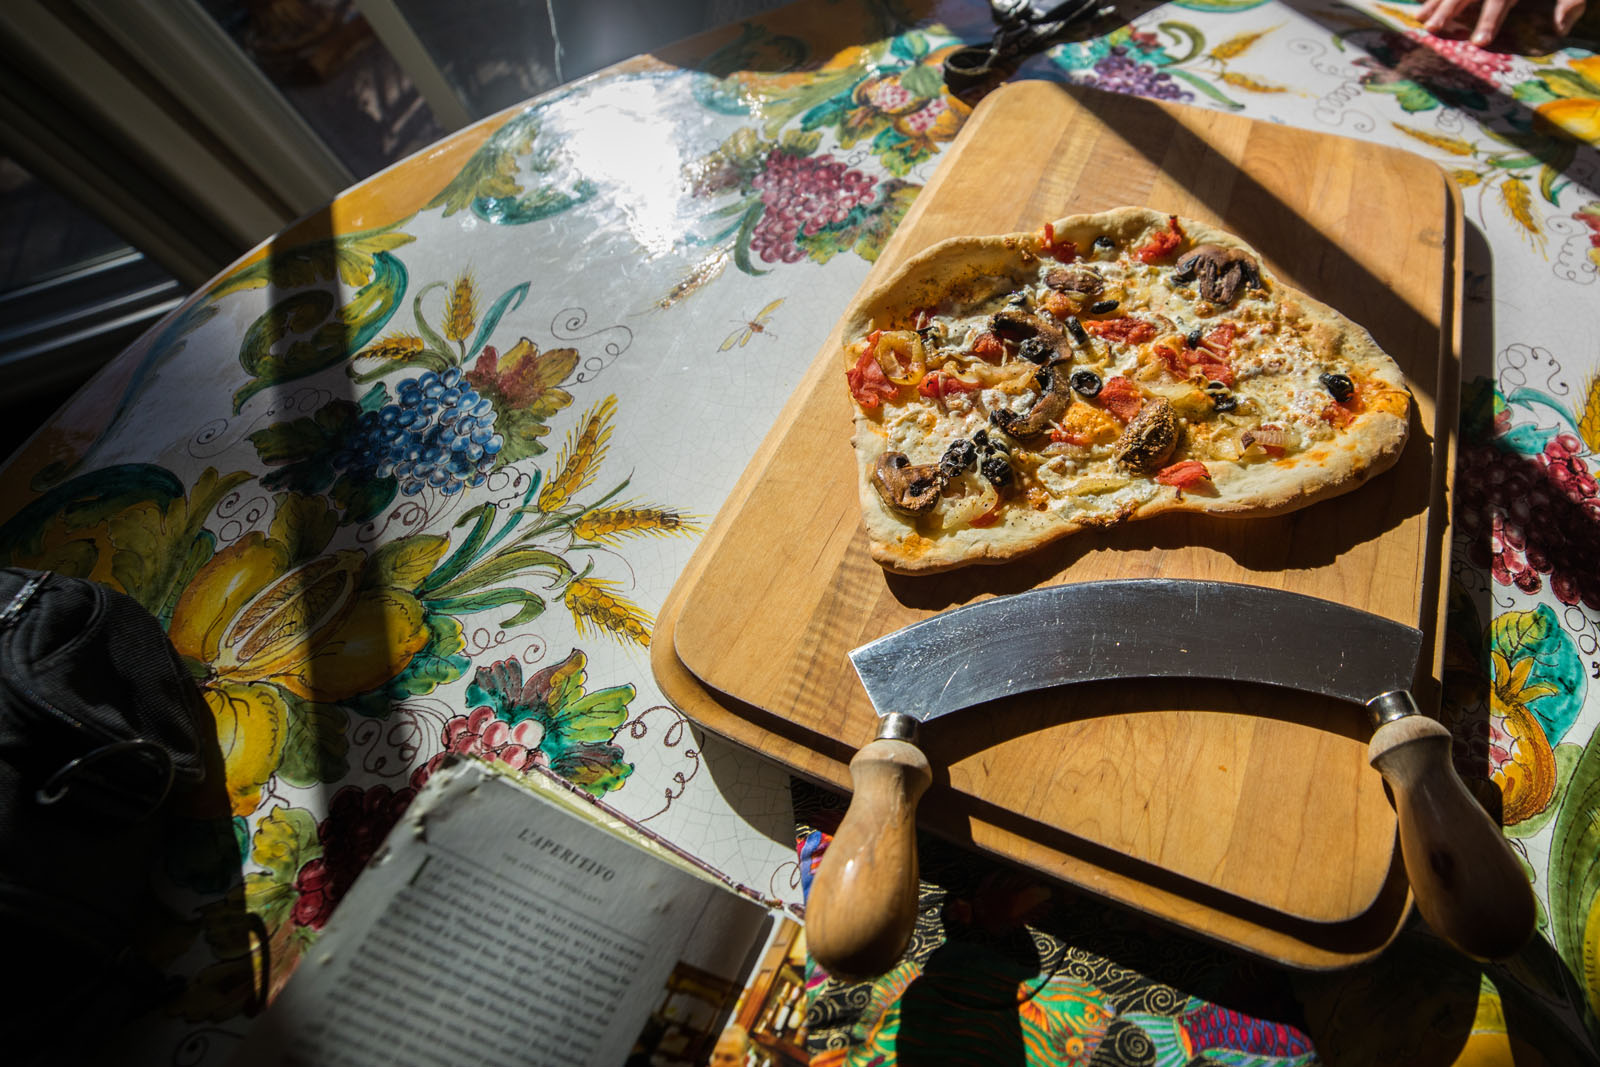 Students in Elementary Italian make homemade pizza at Professor Dario Sponchiado’s friend's home.